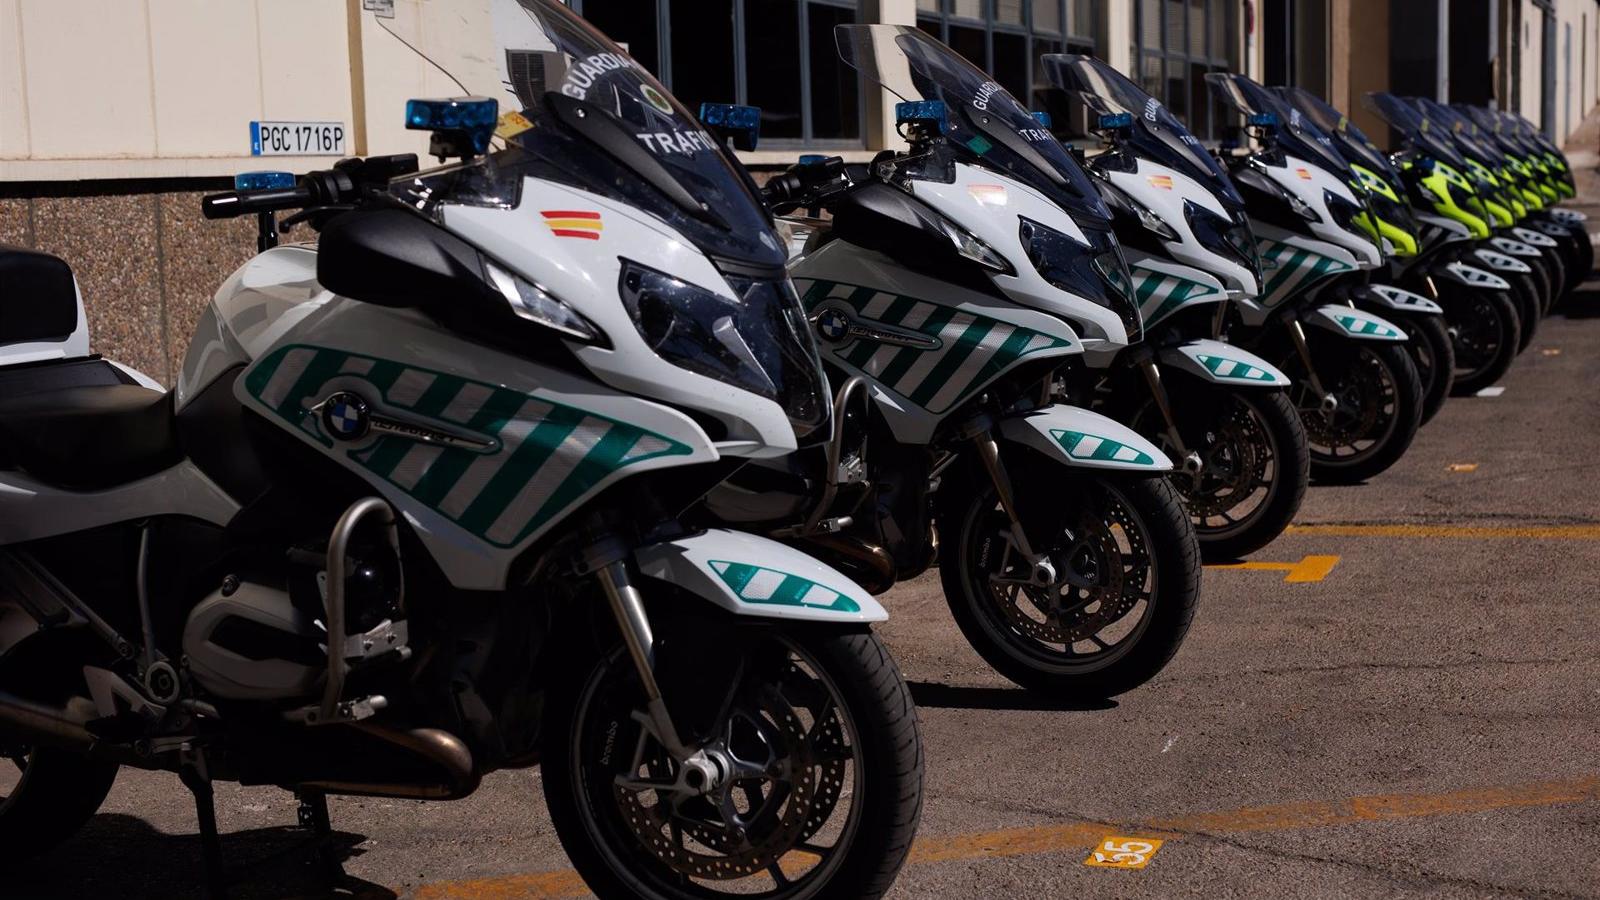 La Guardia Civil despliega más de 370 vehículos para el dispositivo de tráfico